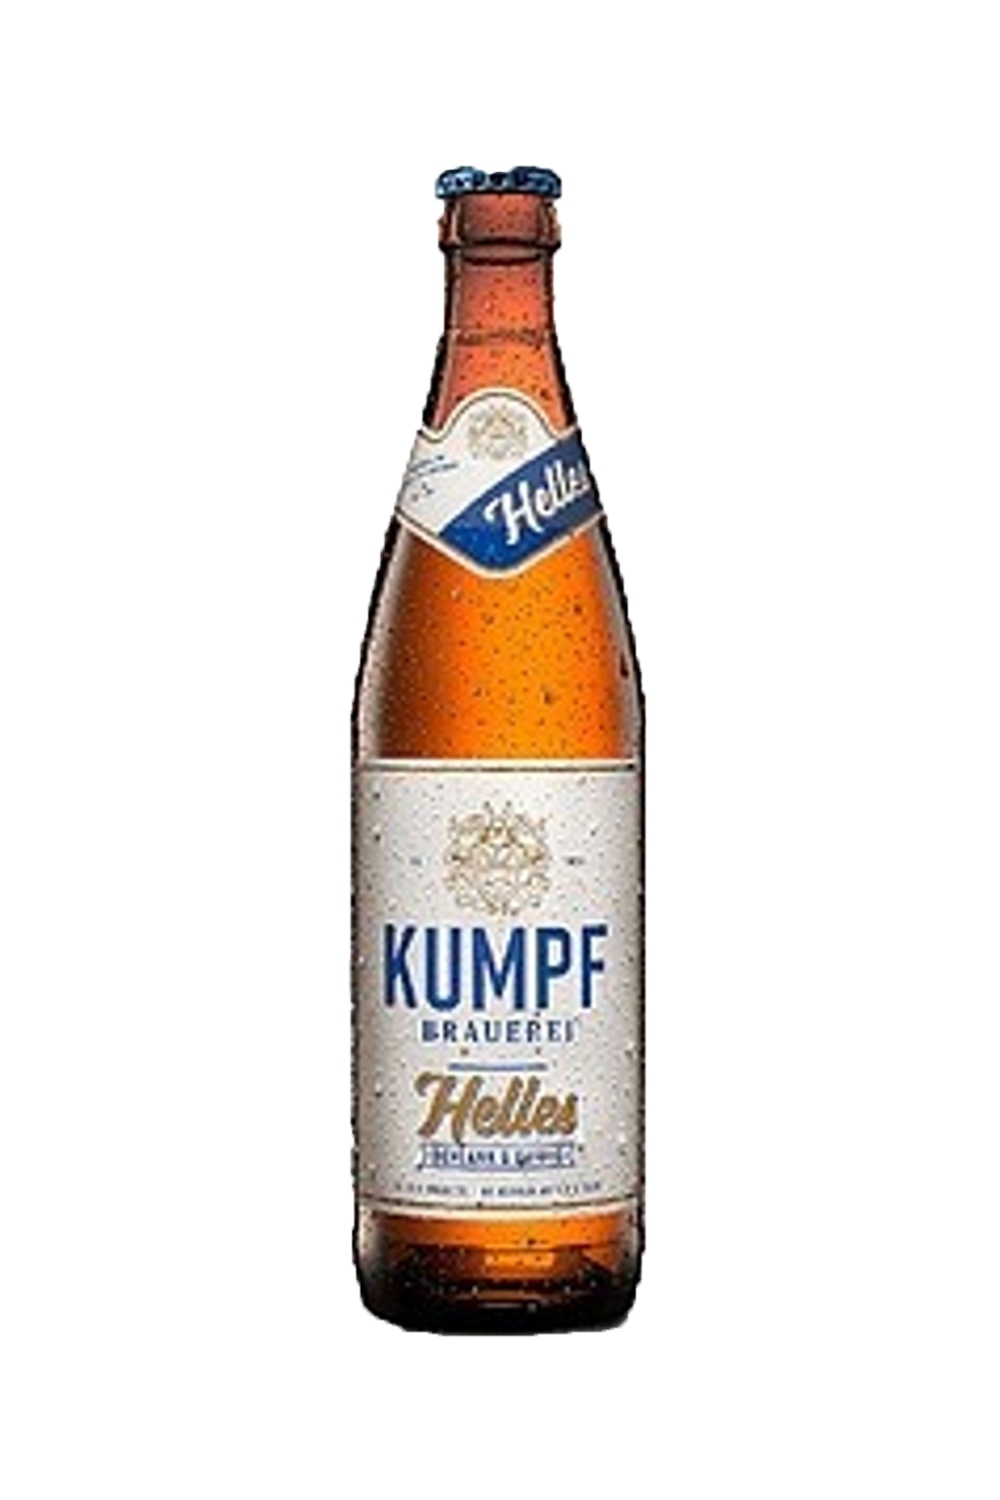 Пиво Кумпф Хеллес 5,1% с/т 0,5 л (Германия)